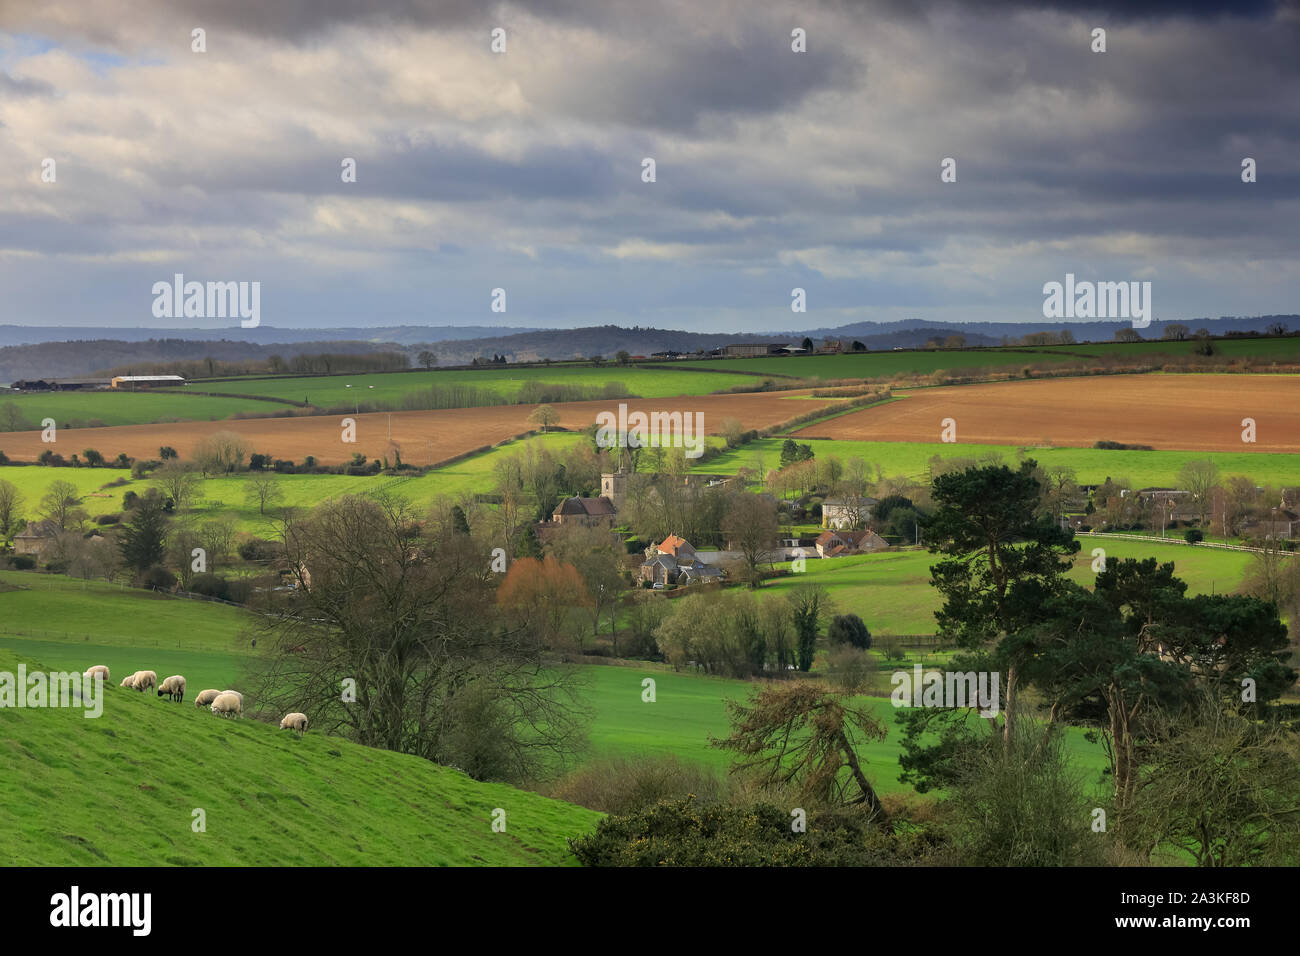 Le printemps avec des moutons sur la colline au-dessus de Poyntington, Dorset, England, UK Banque D'Images